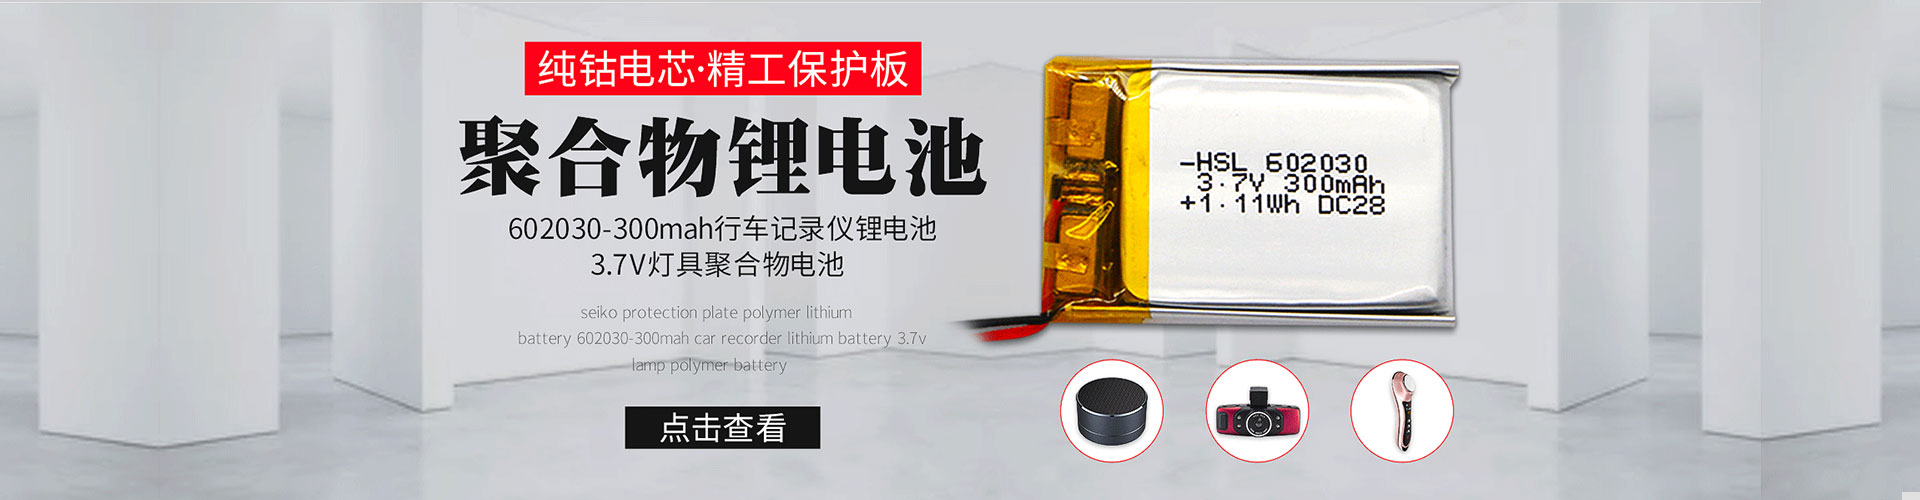 凯时游戏(中国)官方网站_产品1399